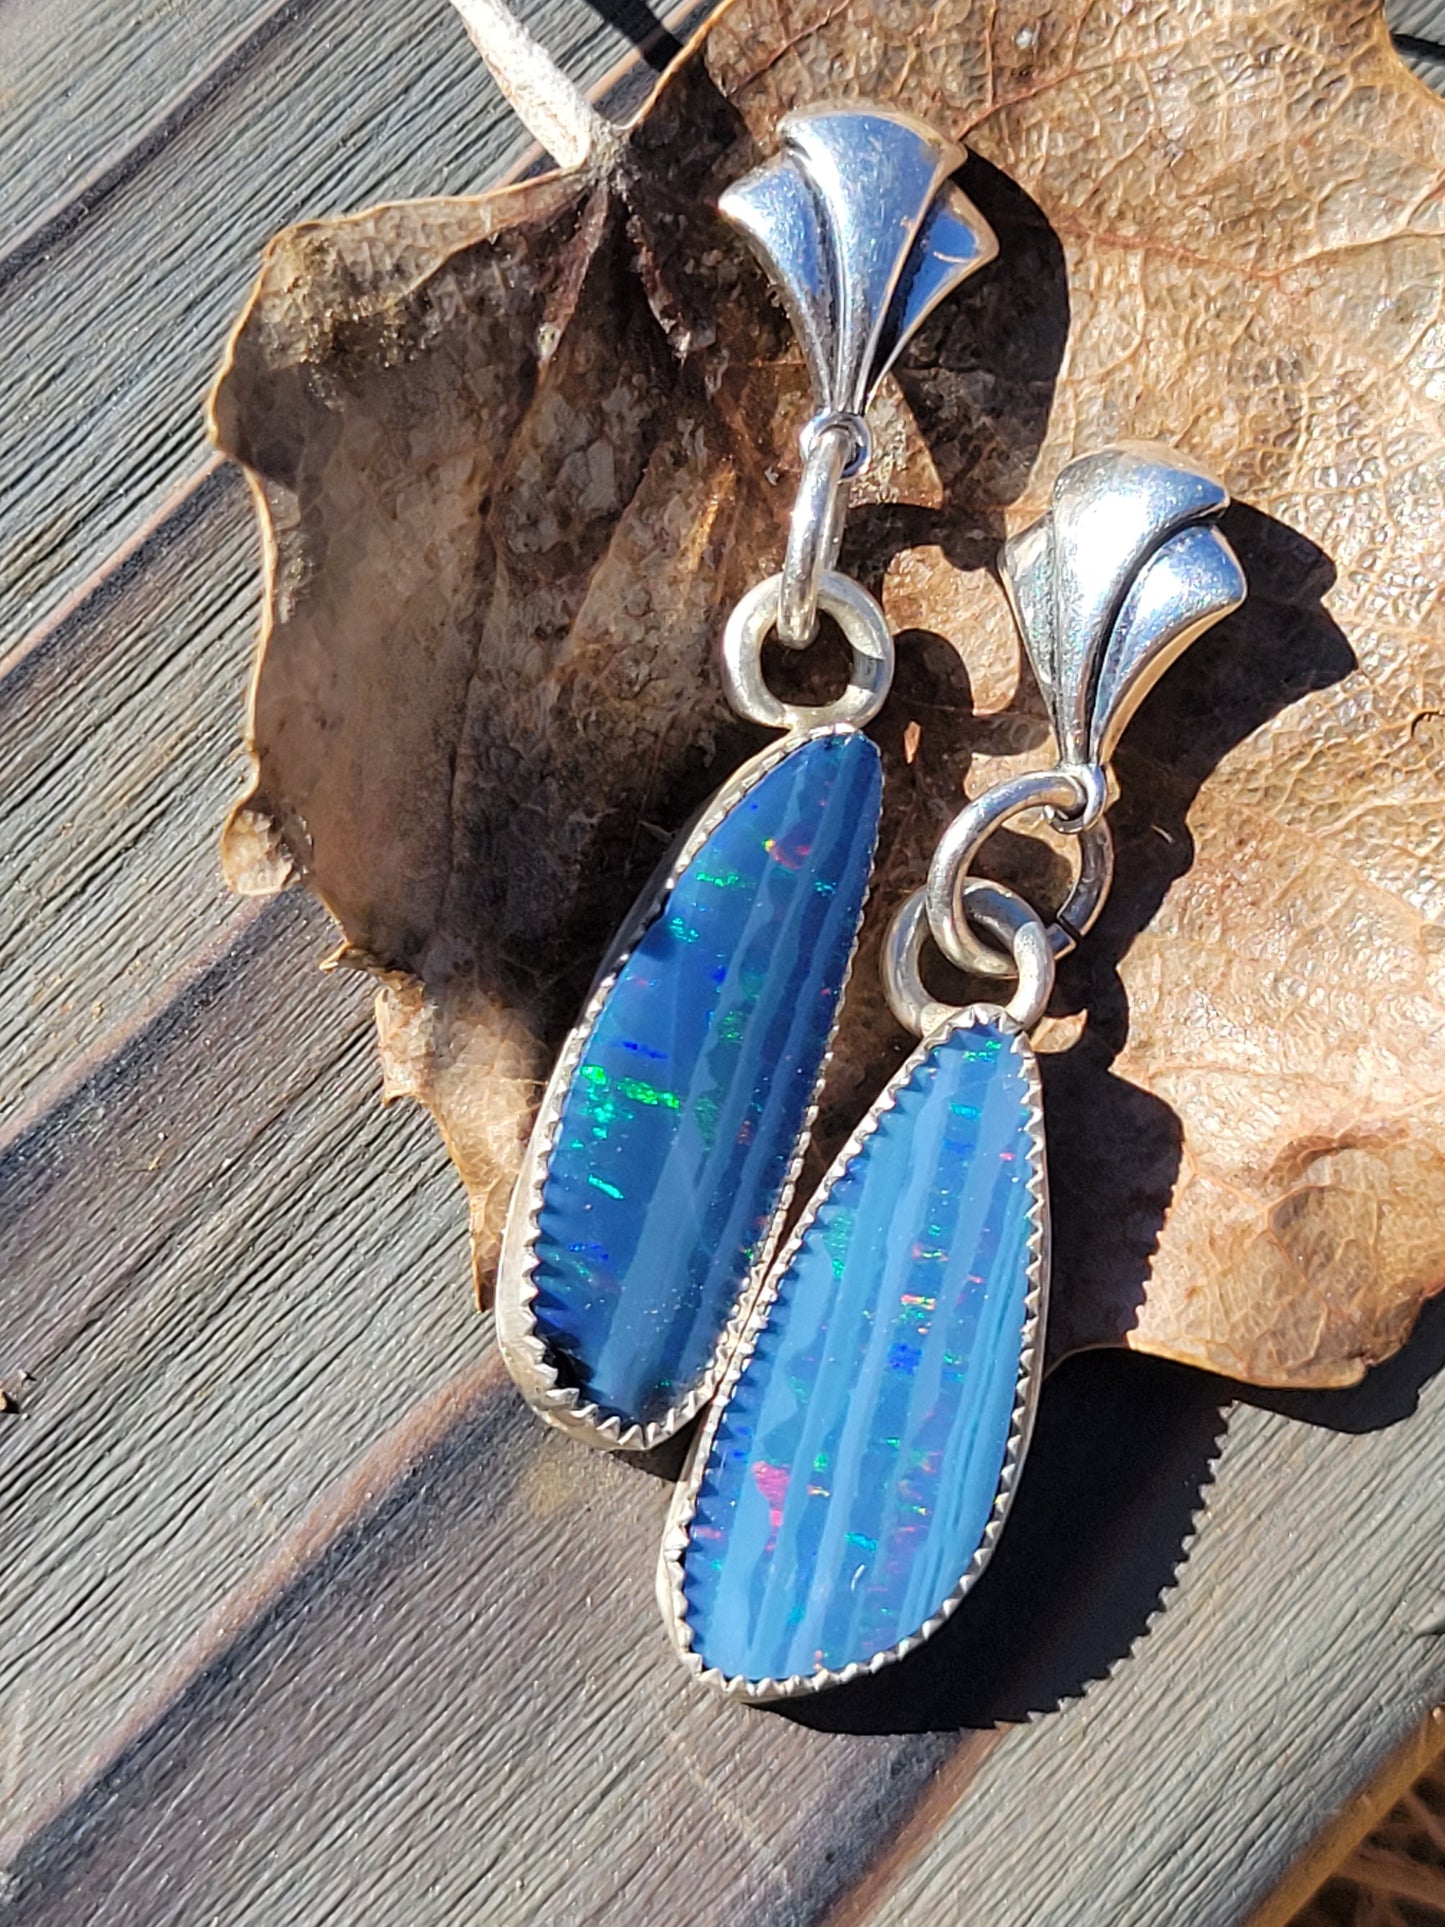 Australian Opal Drop Earrings